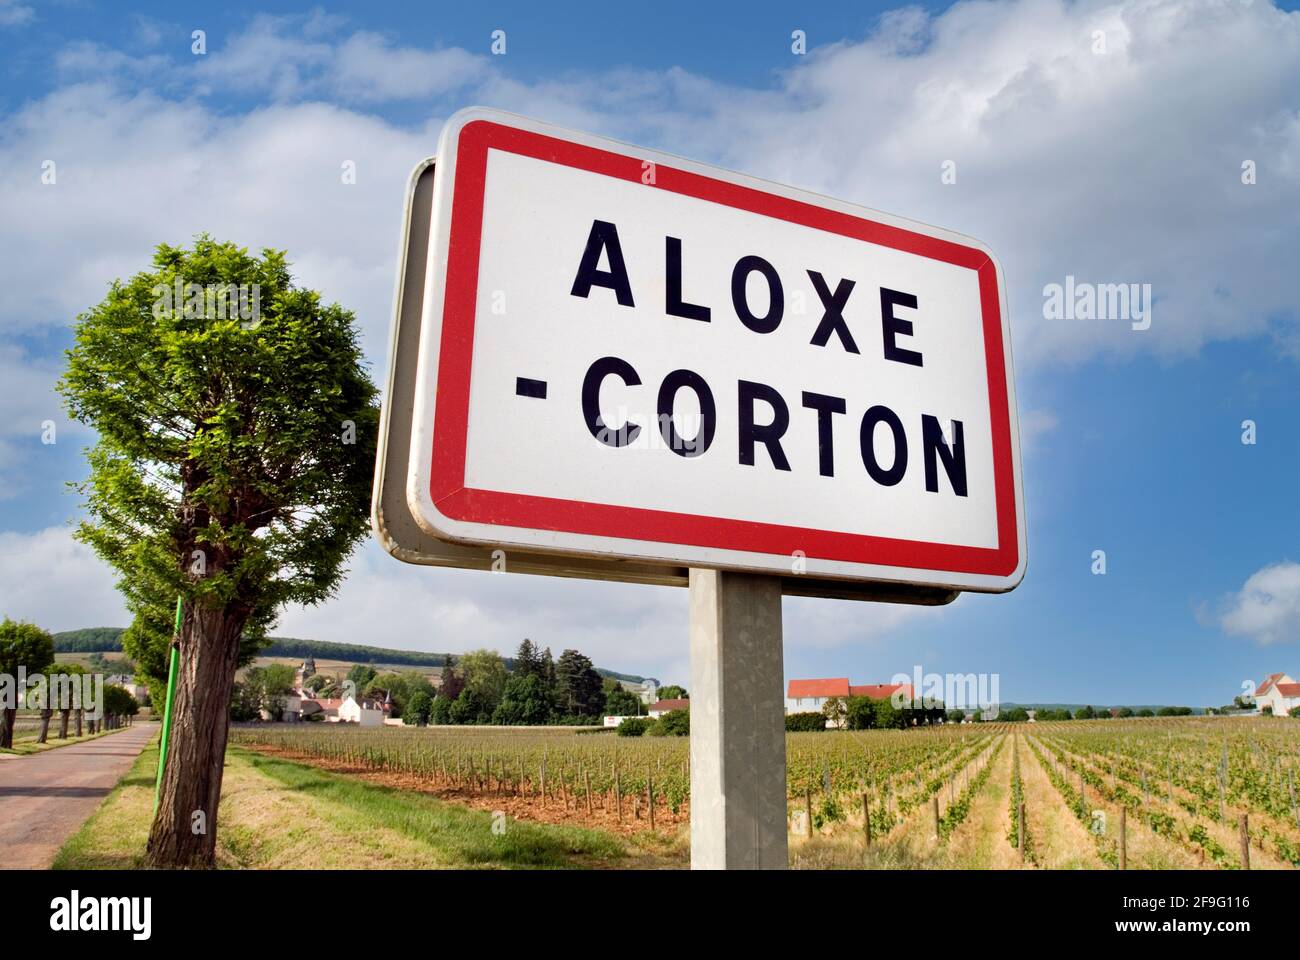 ALOXE CORTON WEINGÜTER Road Schild für Aloxe Corton ein bekannter Kommune, die qualitativ hochwertigen Burgunder Wein Cote d'Or Frankreich produziert Stockfoto